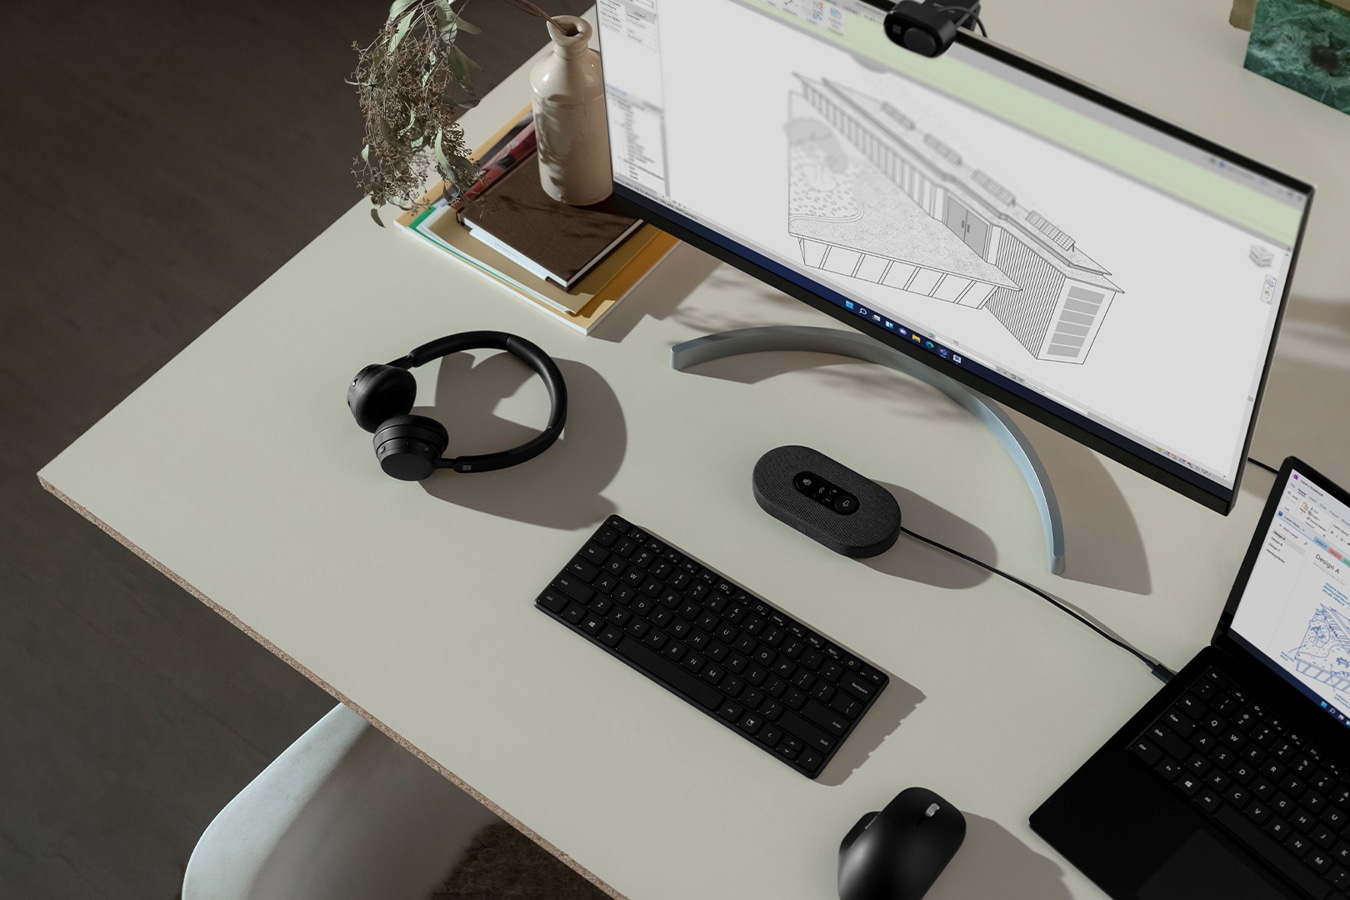 Een Surface-apparaat staat op een bureau en is aangesloten op een externe monitor met diverse Surface-accessoires in de buurt